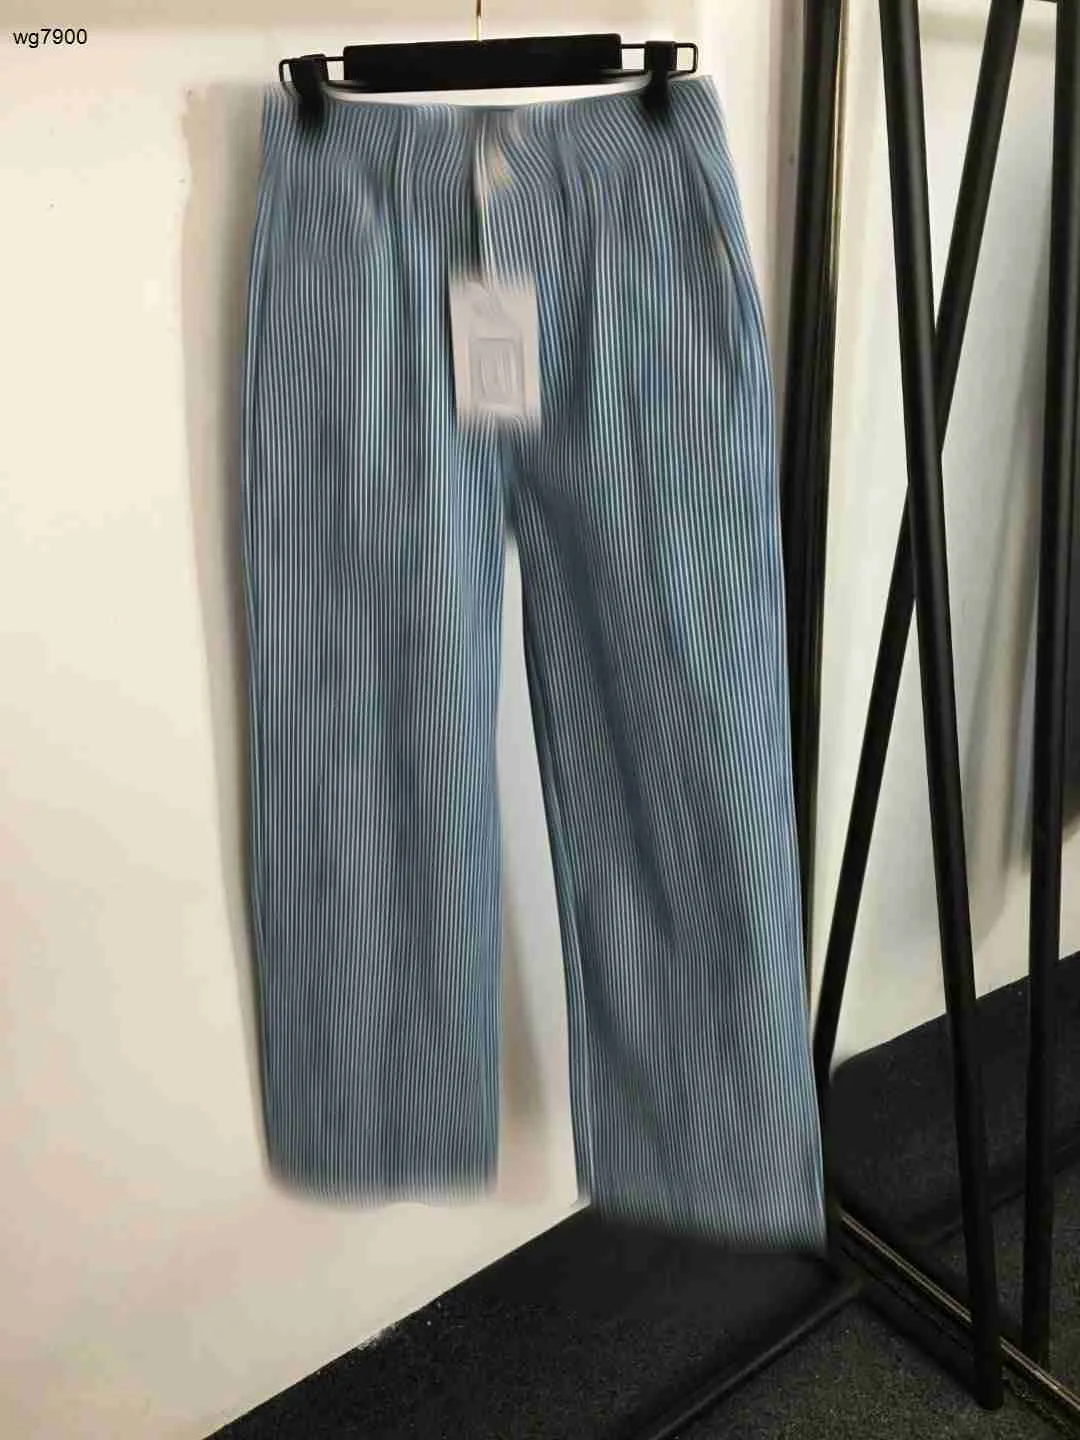 Diseñadores Mujeres Jeans Ropa de la marca Pantalones Calidad cubierta de bordados Niñas Pantalones de mezclilla directa 07 Nuevos llegadas